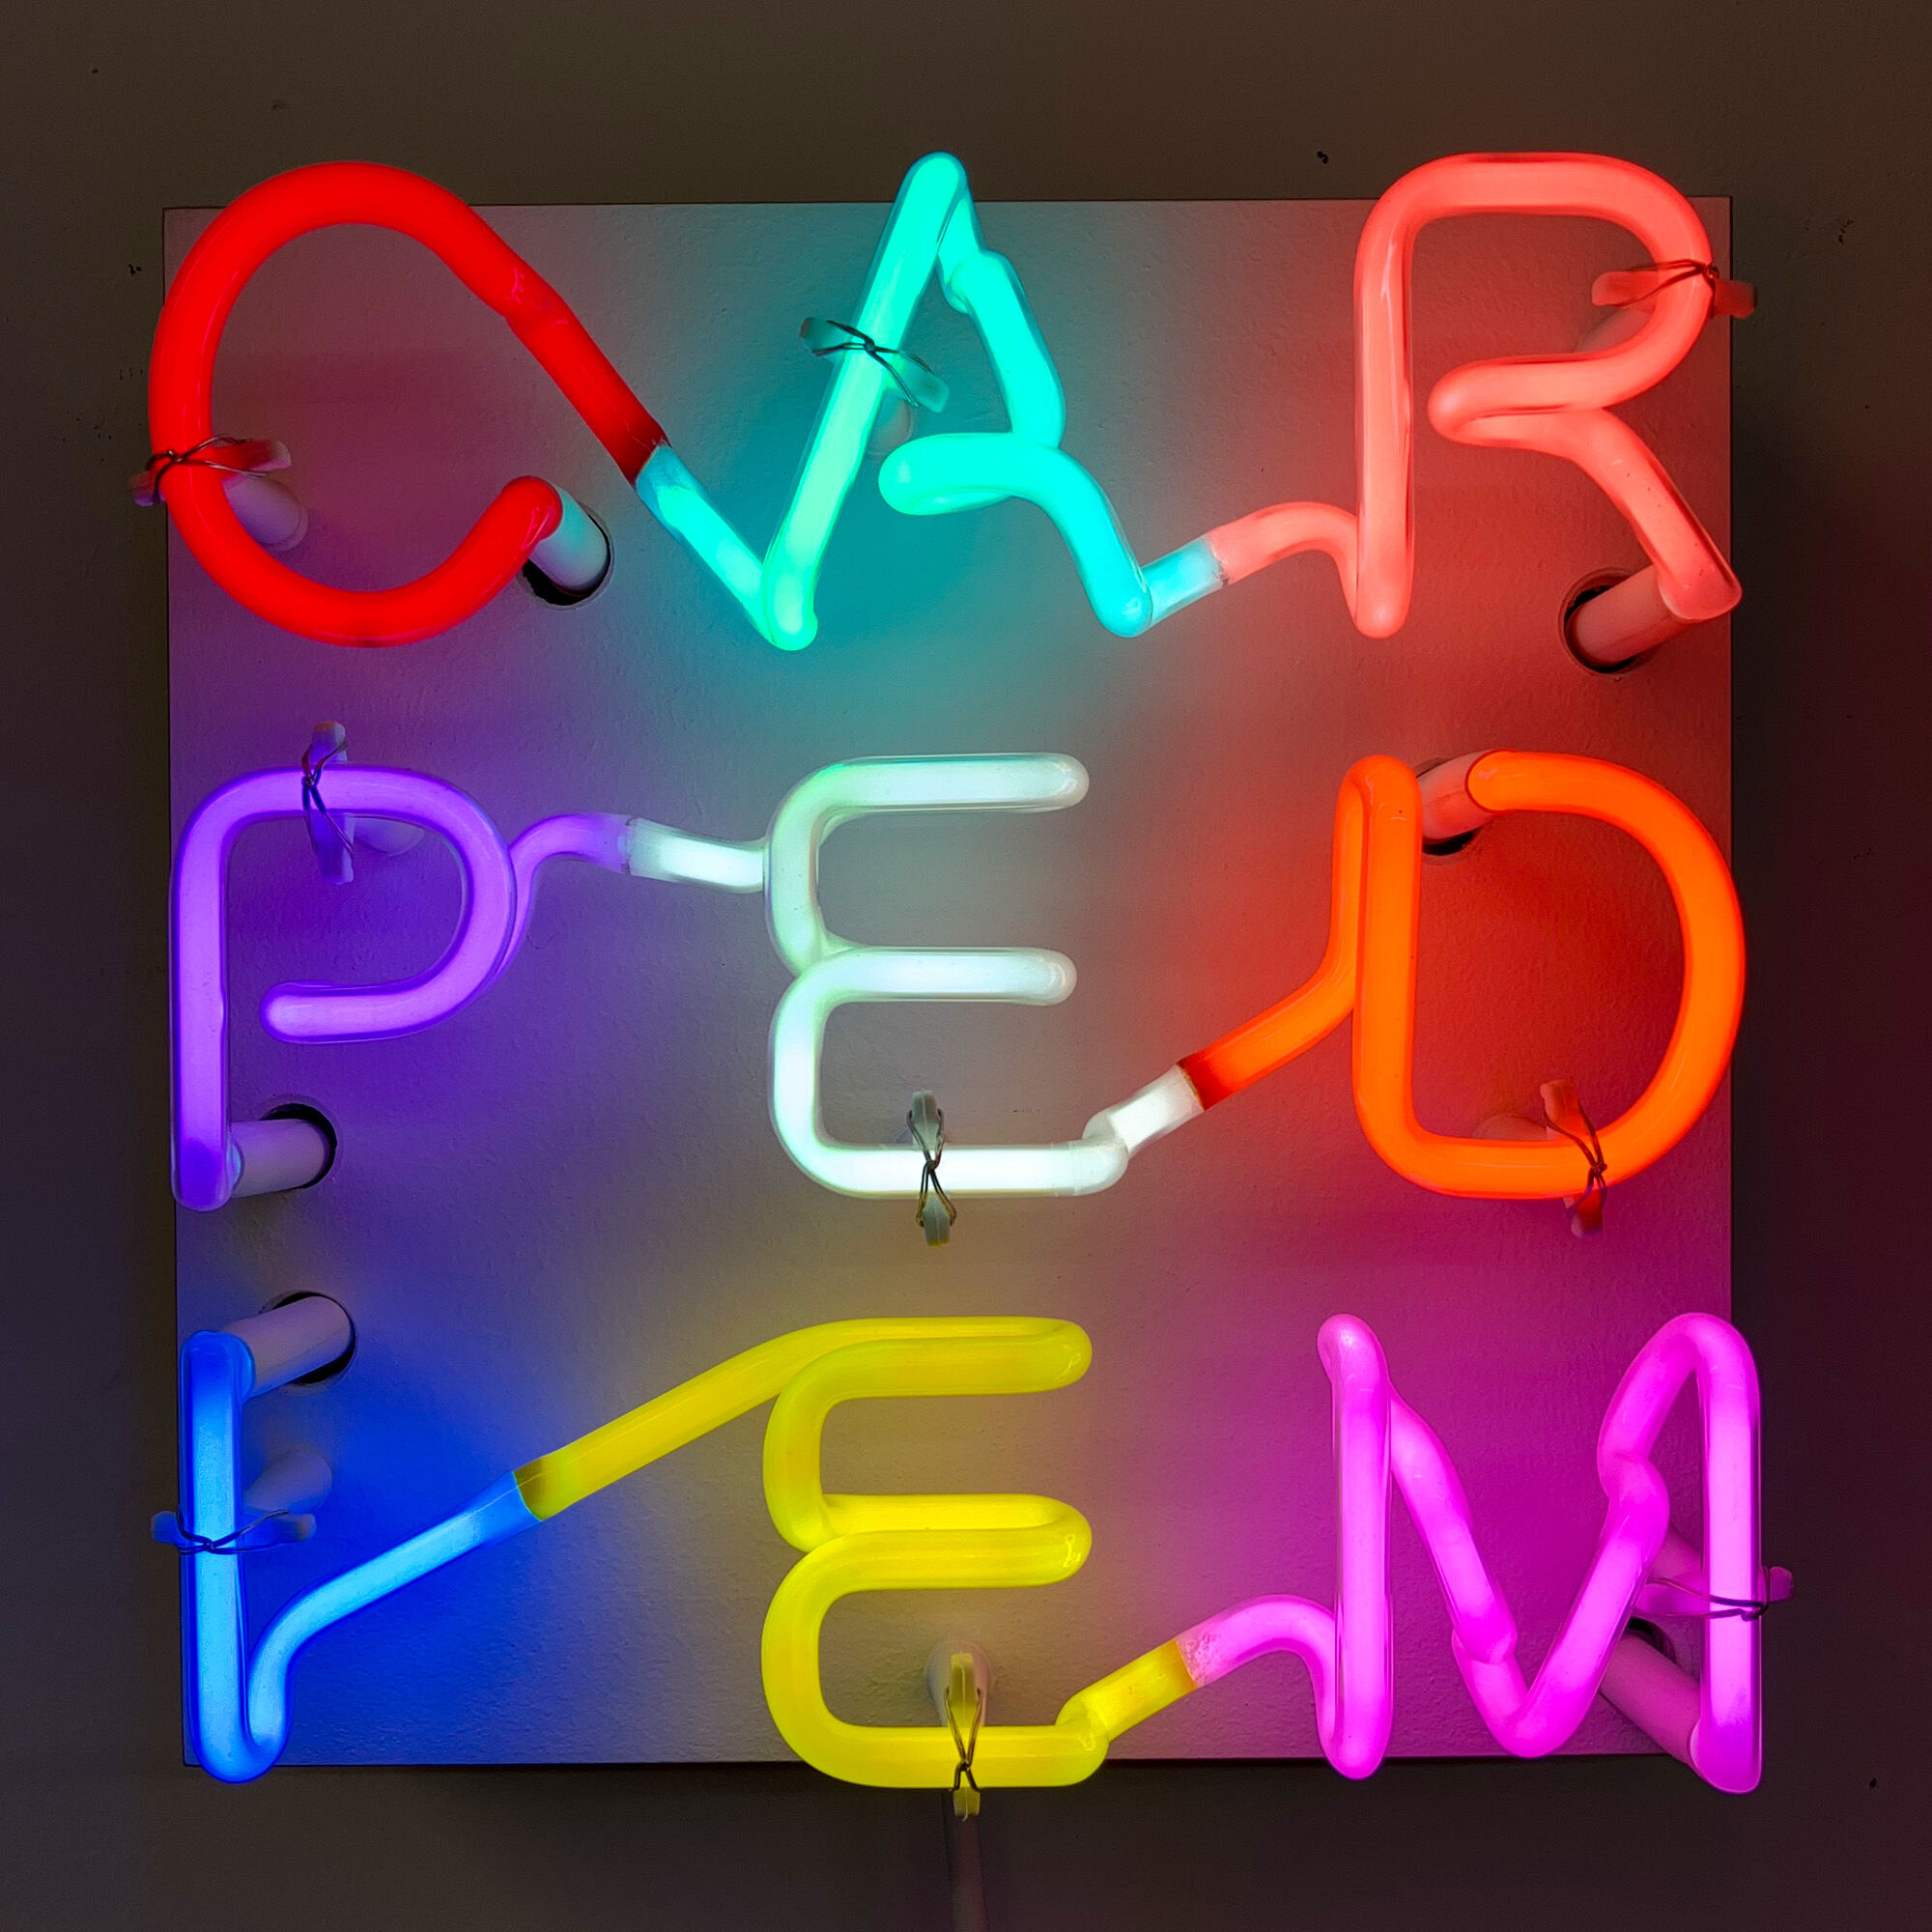 Wall object "CARPEDIEM" by Albert Hien